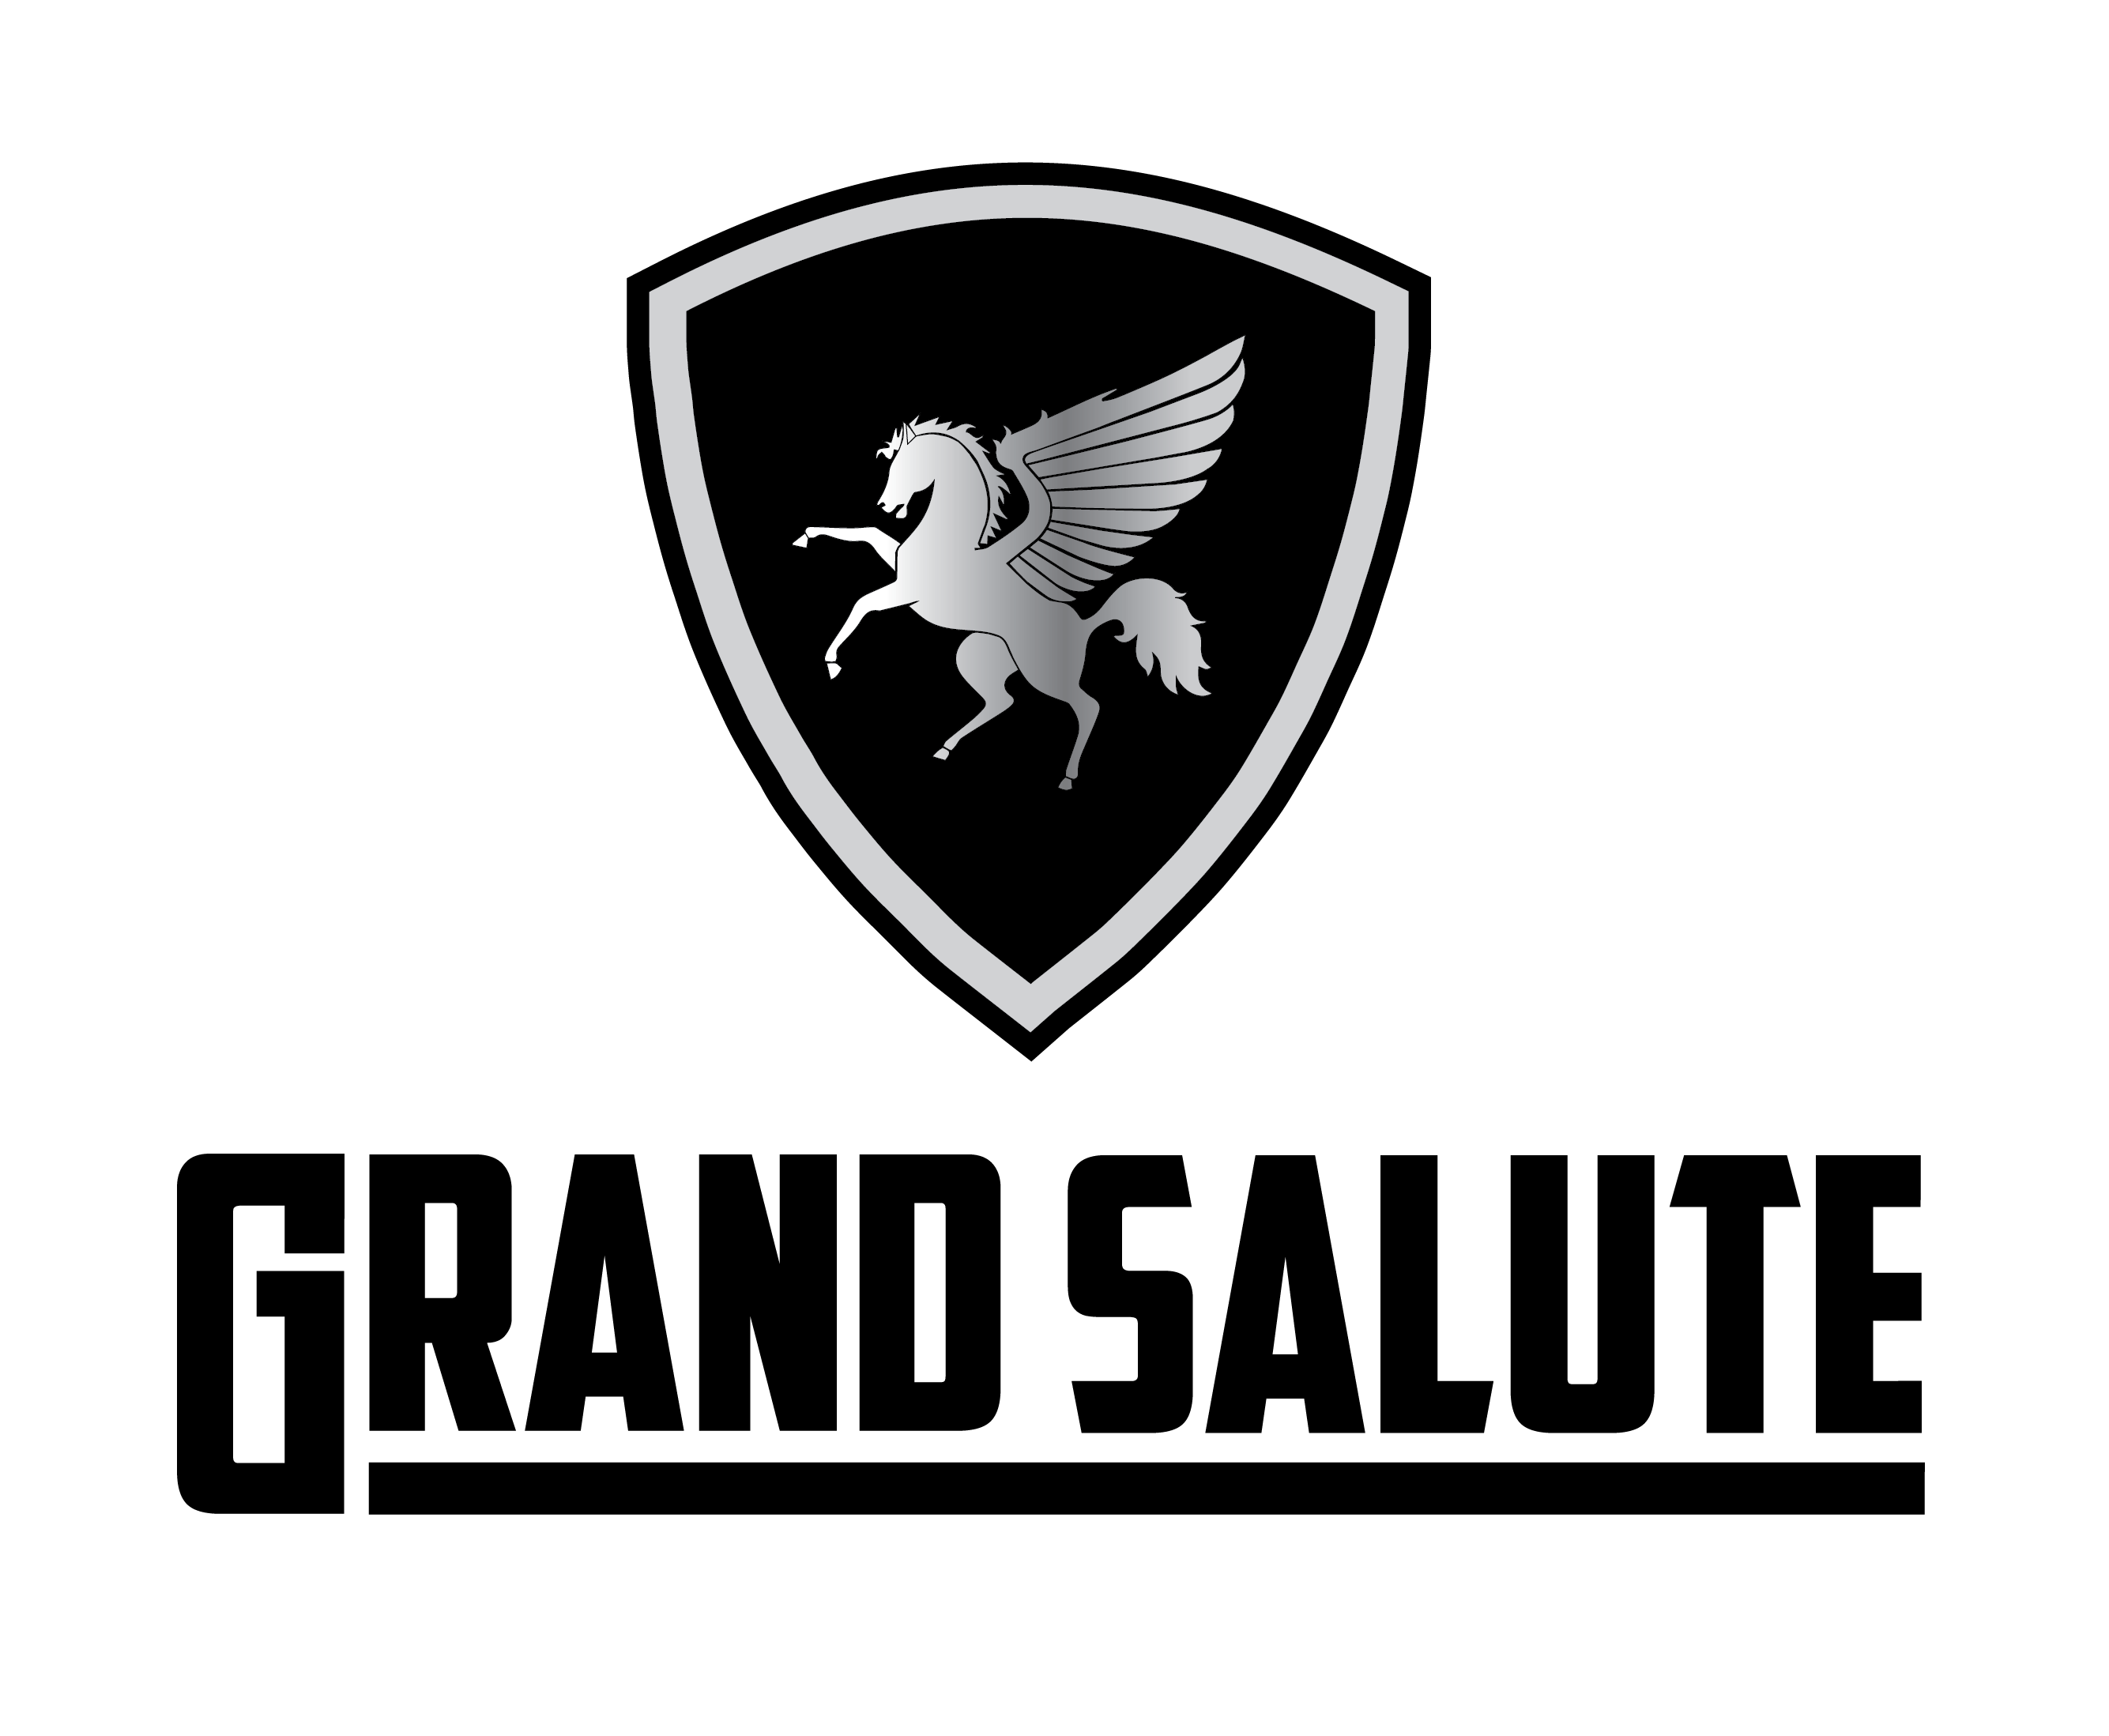 Salute Logo - Grand Salute Caravans